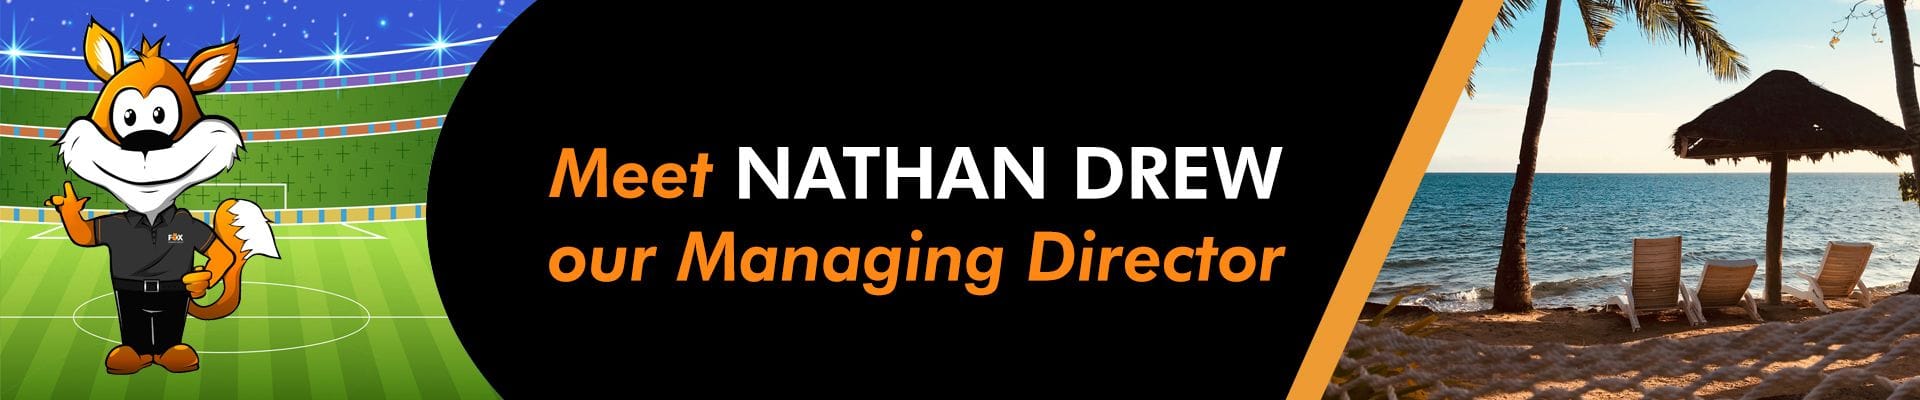 Meet Nathan Drew